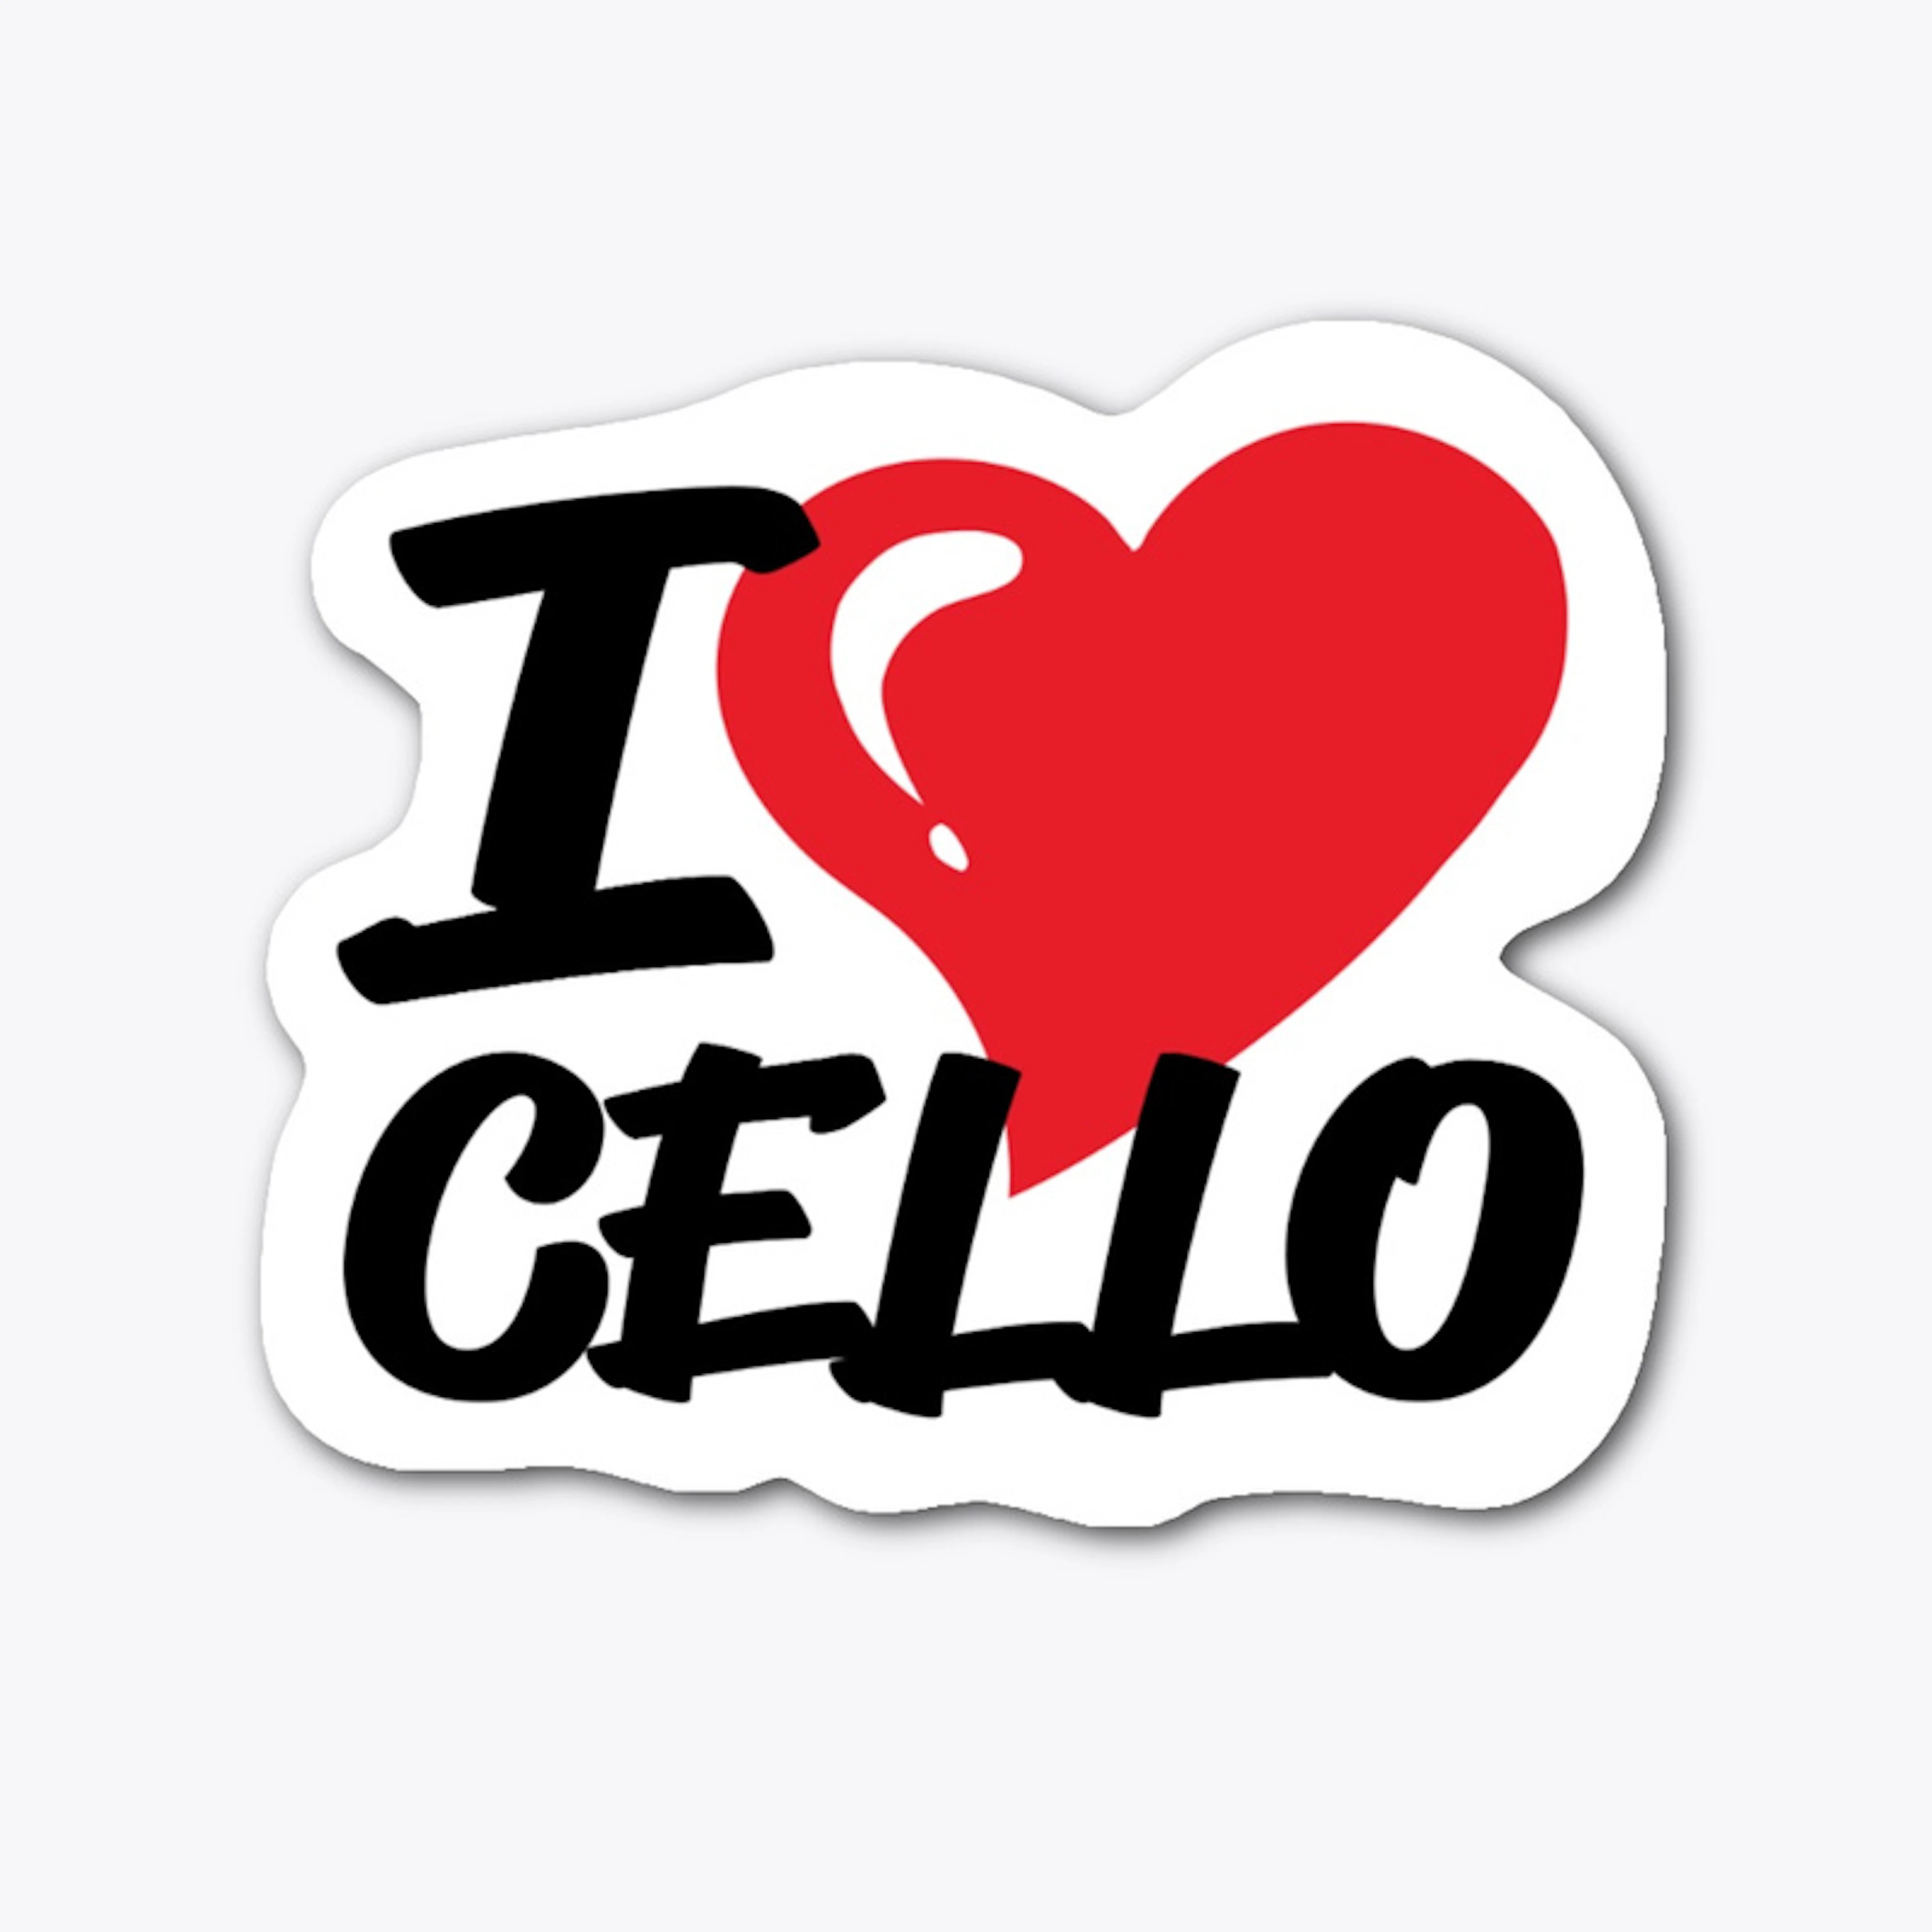 I love cello!